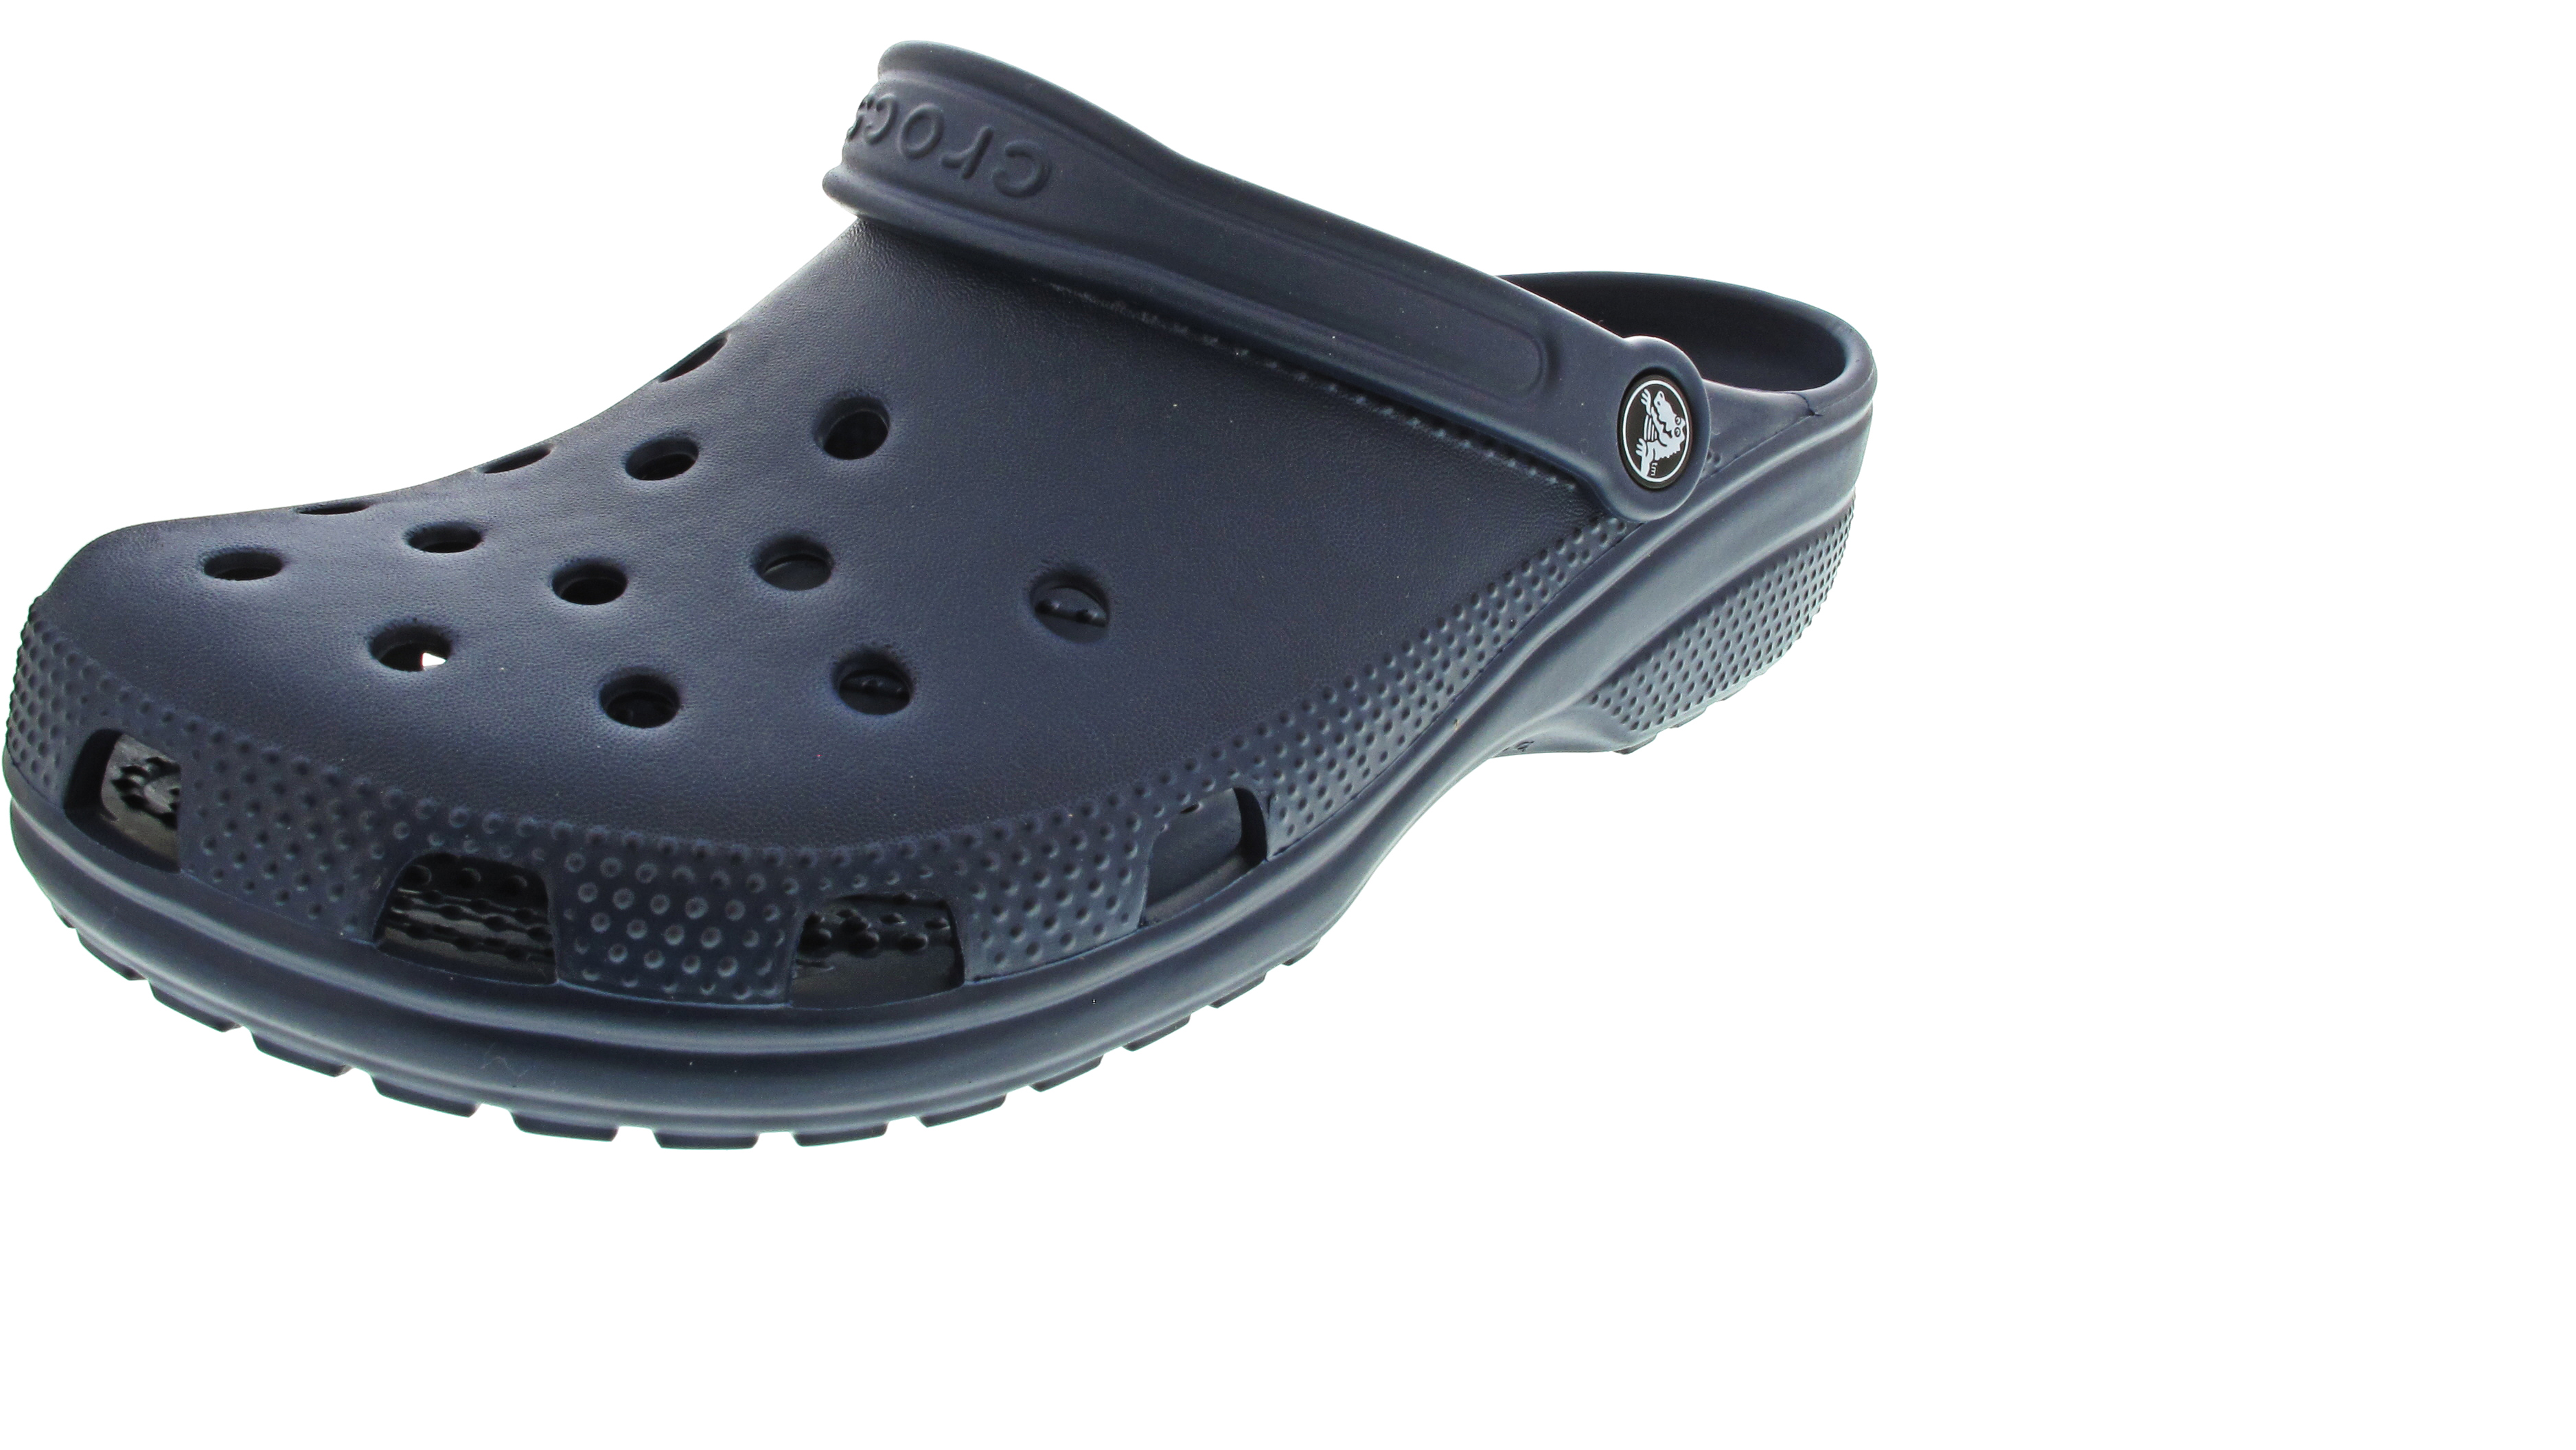 Crocs Classic Clog